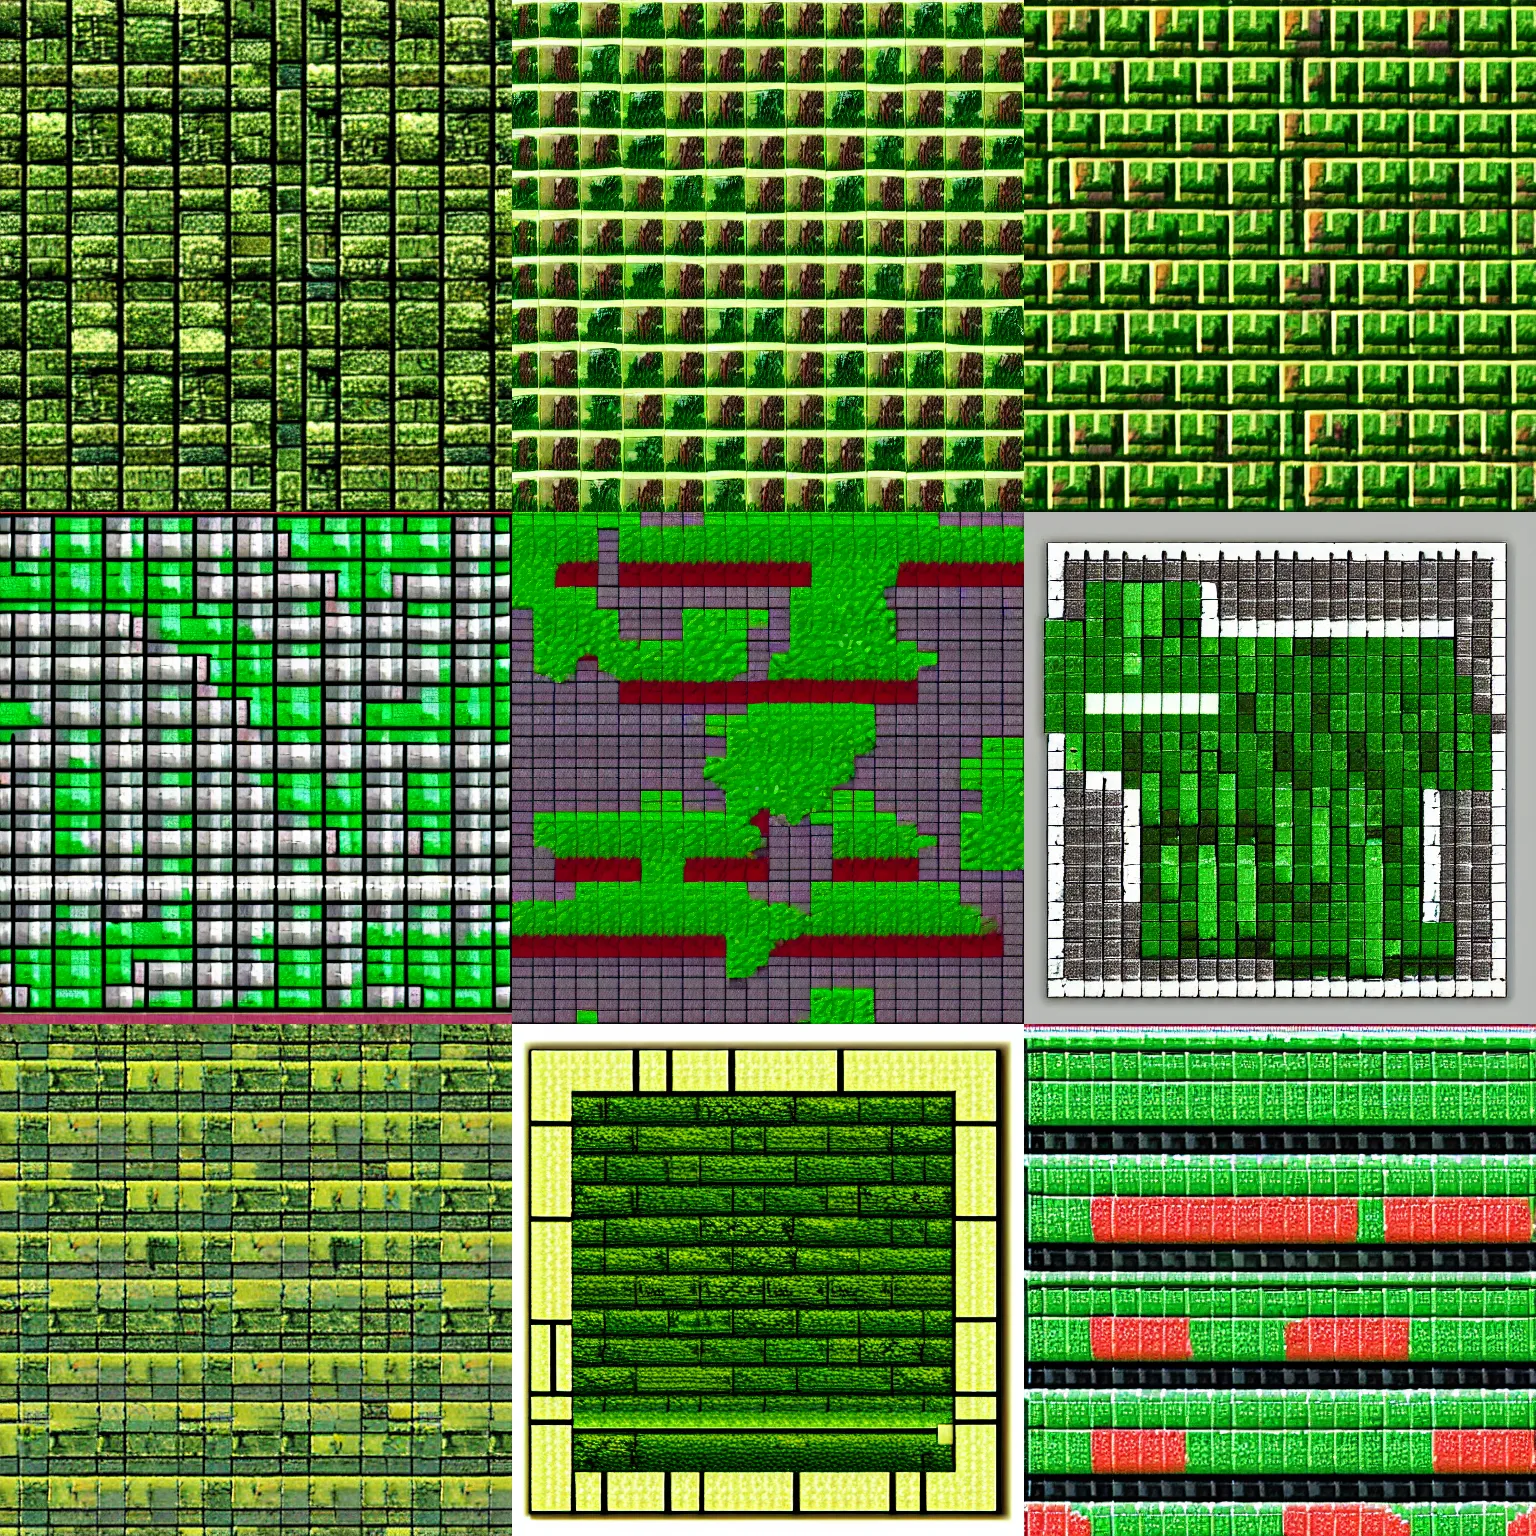 Prompt: pixel art moss brick texture